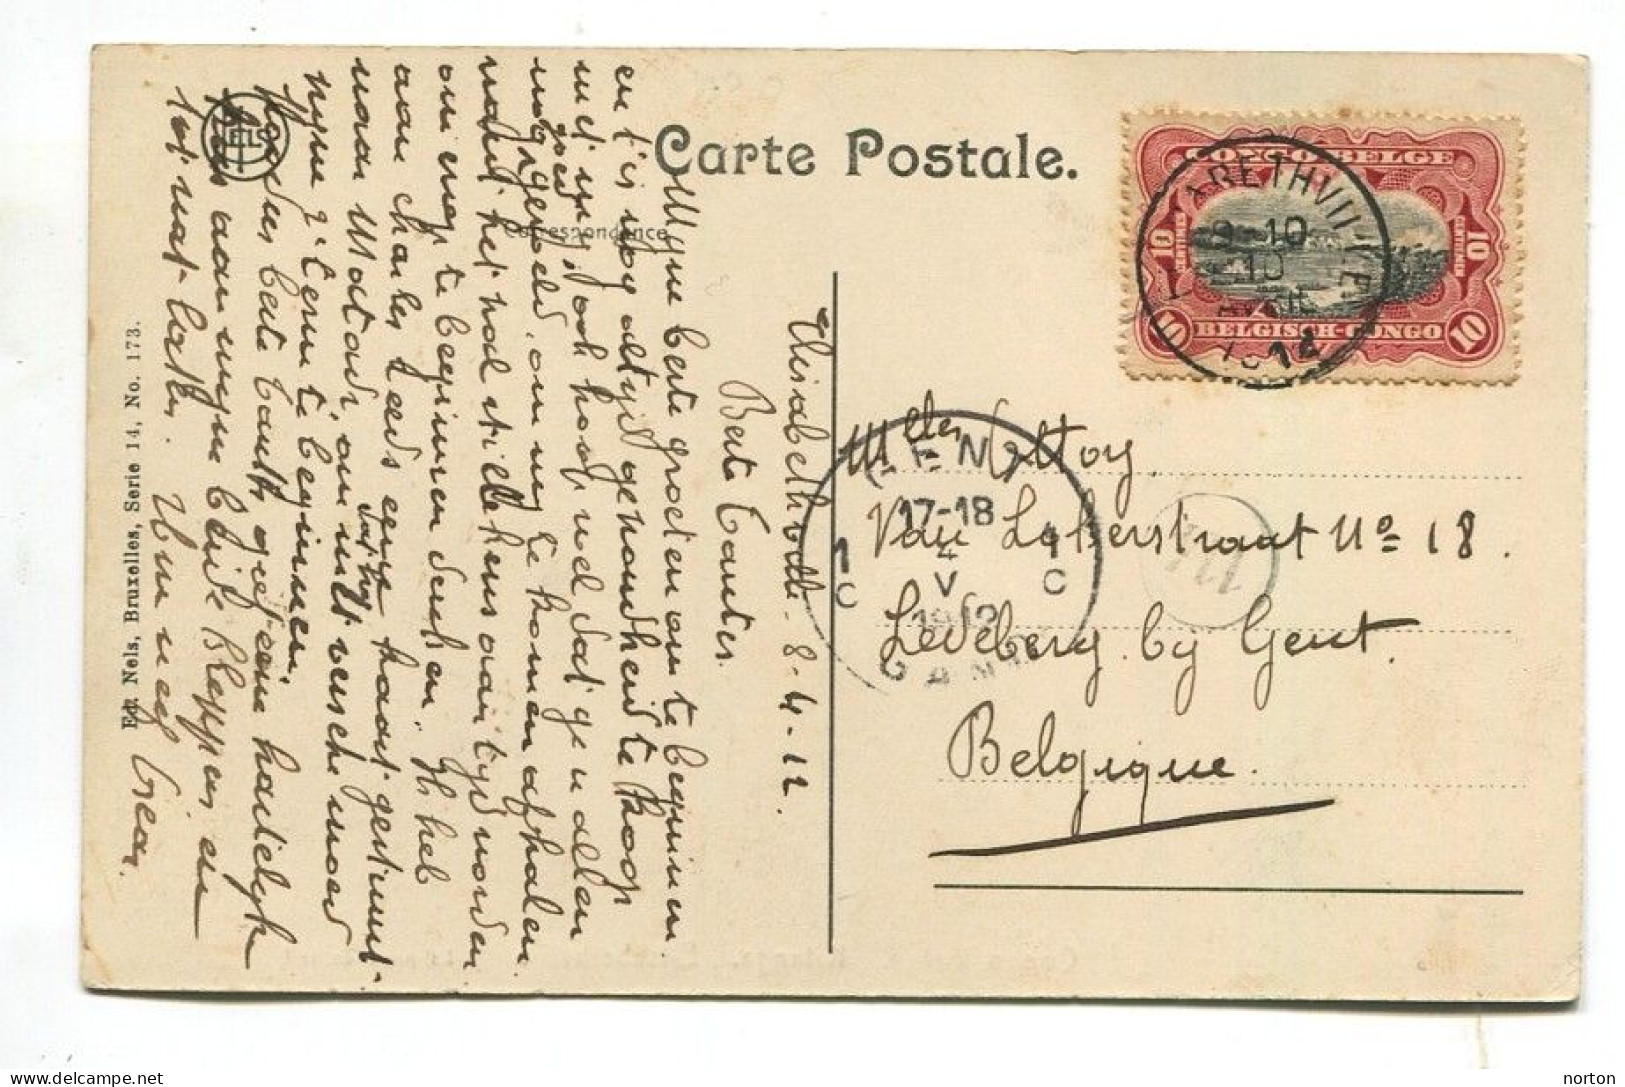 Congo Elisabethville Oblit. Keach 1.1-tDMY Sur C.O.B. 55 Sur Carte Postale Vers Gent Le 10/04/1912 - Covers & Documents